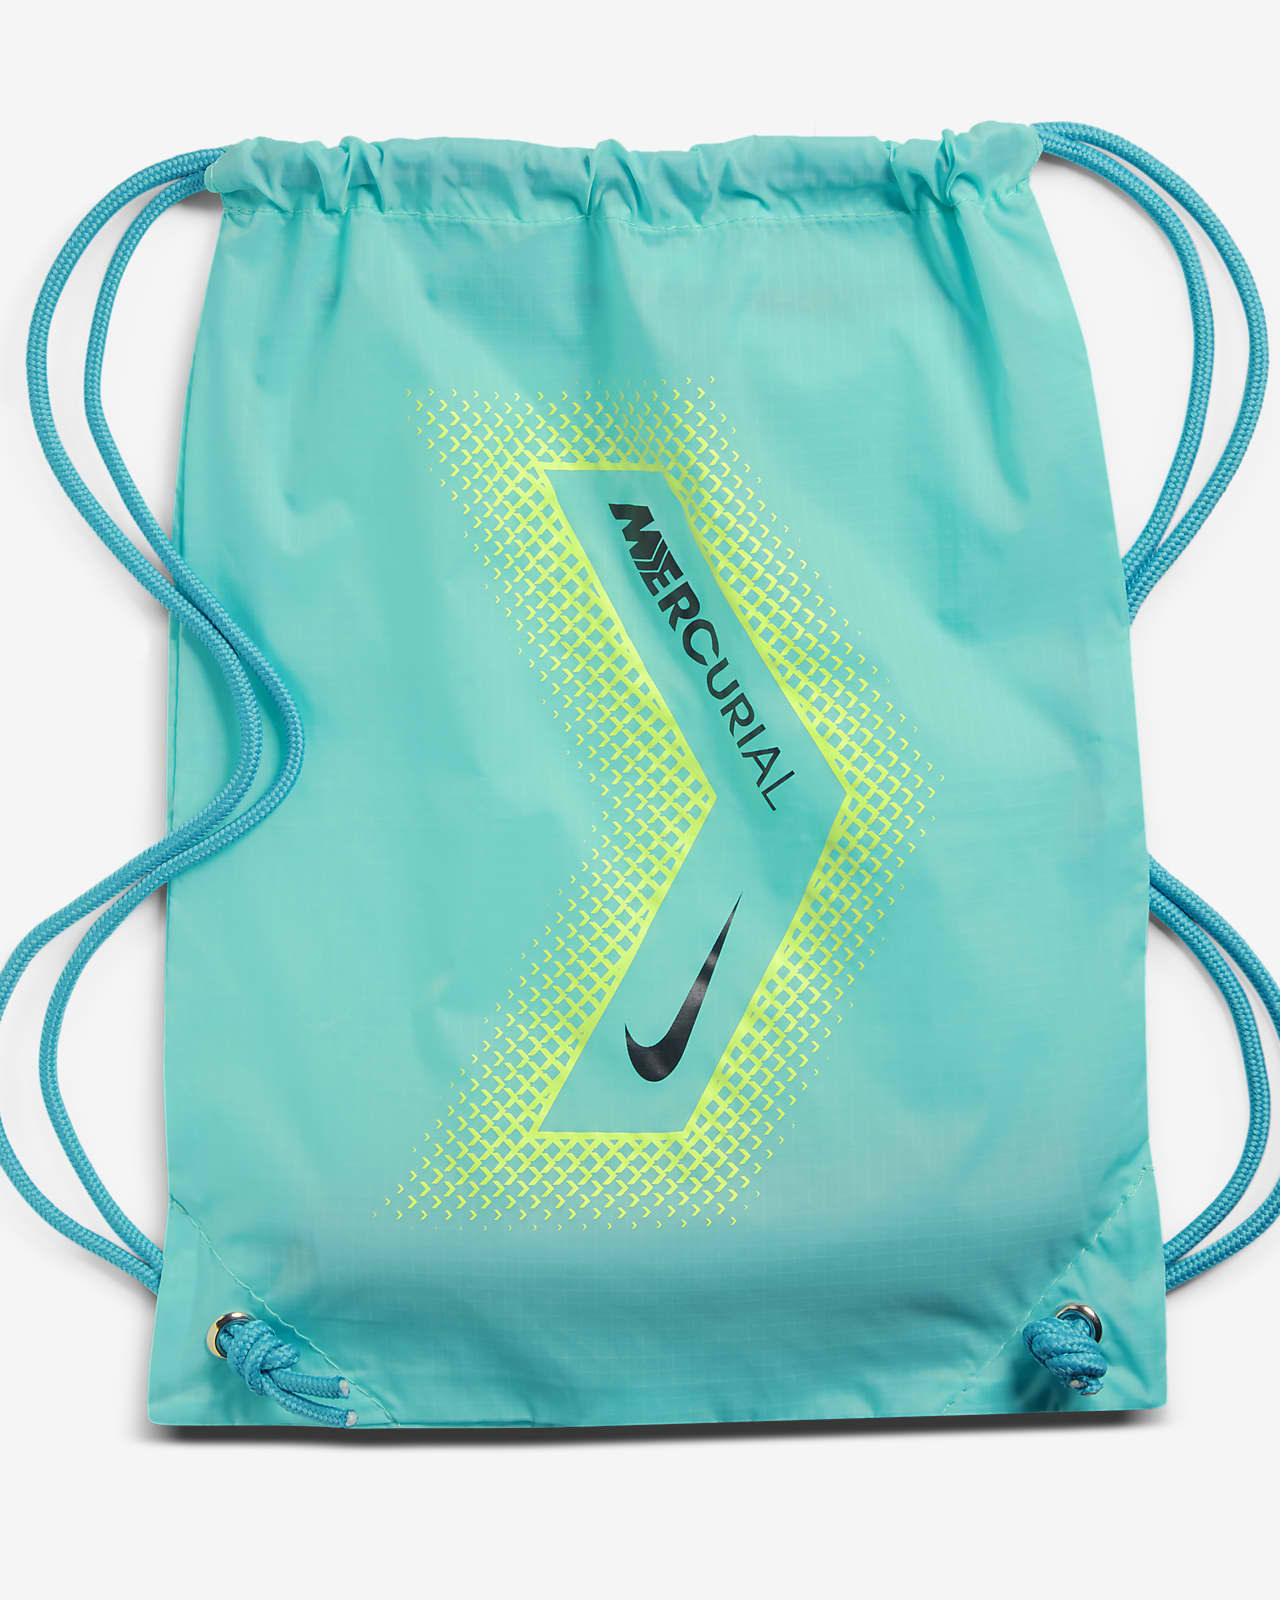 Nike公式 ナイキ マーキュリアル ヴェイパー 14 エリート Ag 人工芝用 サッカースパイク オンラインストア 通販サイト